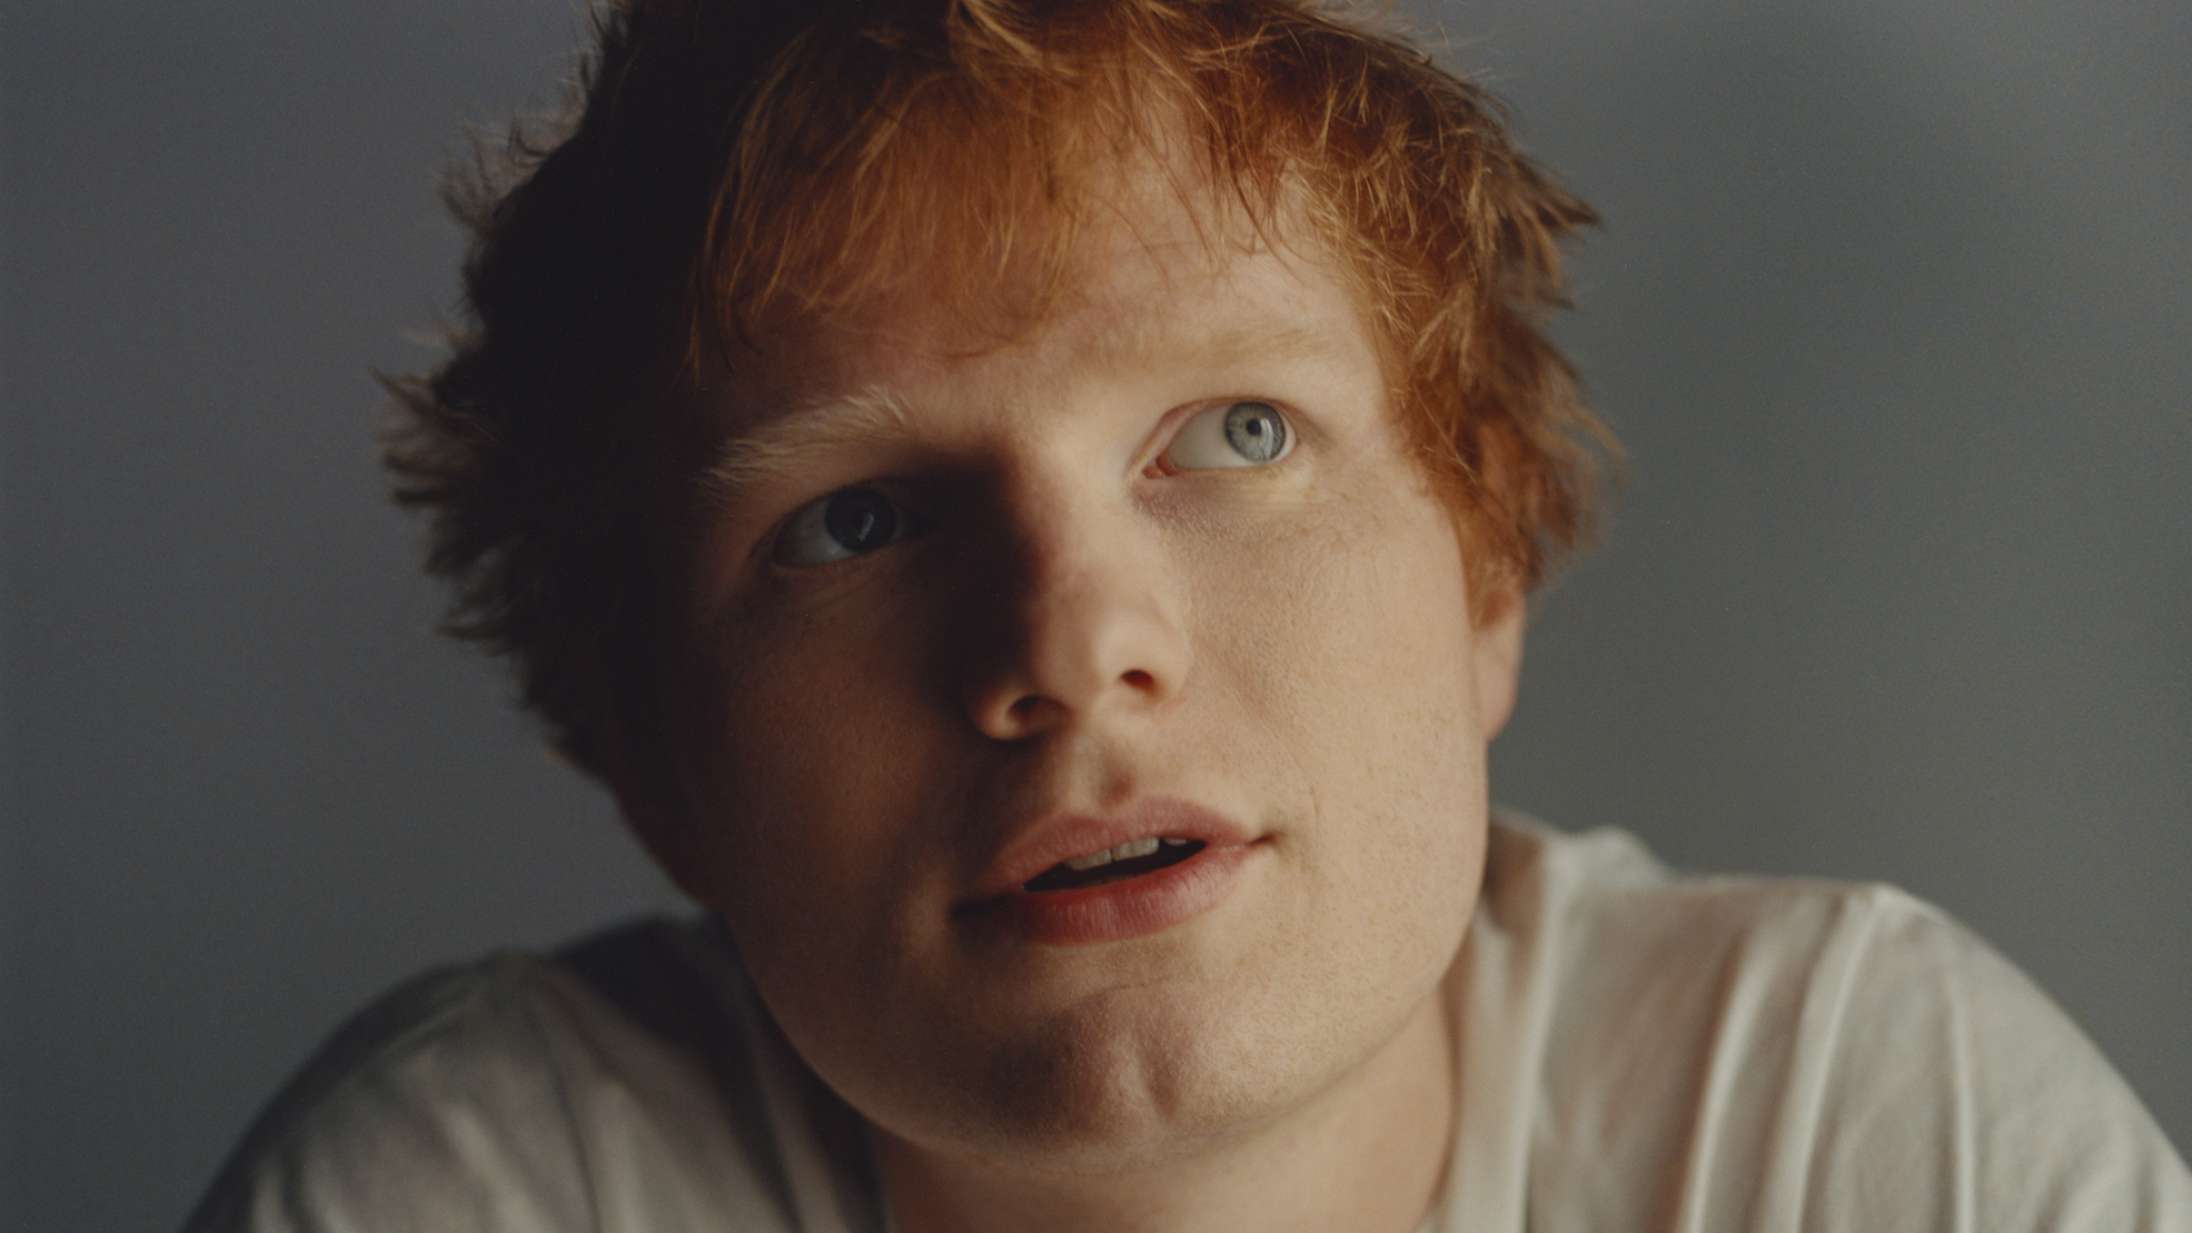 Ed Sheeran vinder medieombrust retssag om plagiat – deler video på Instagram